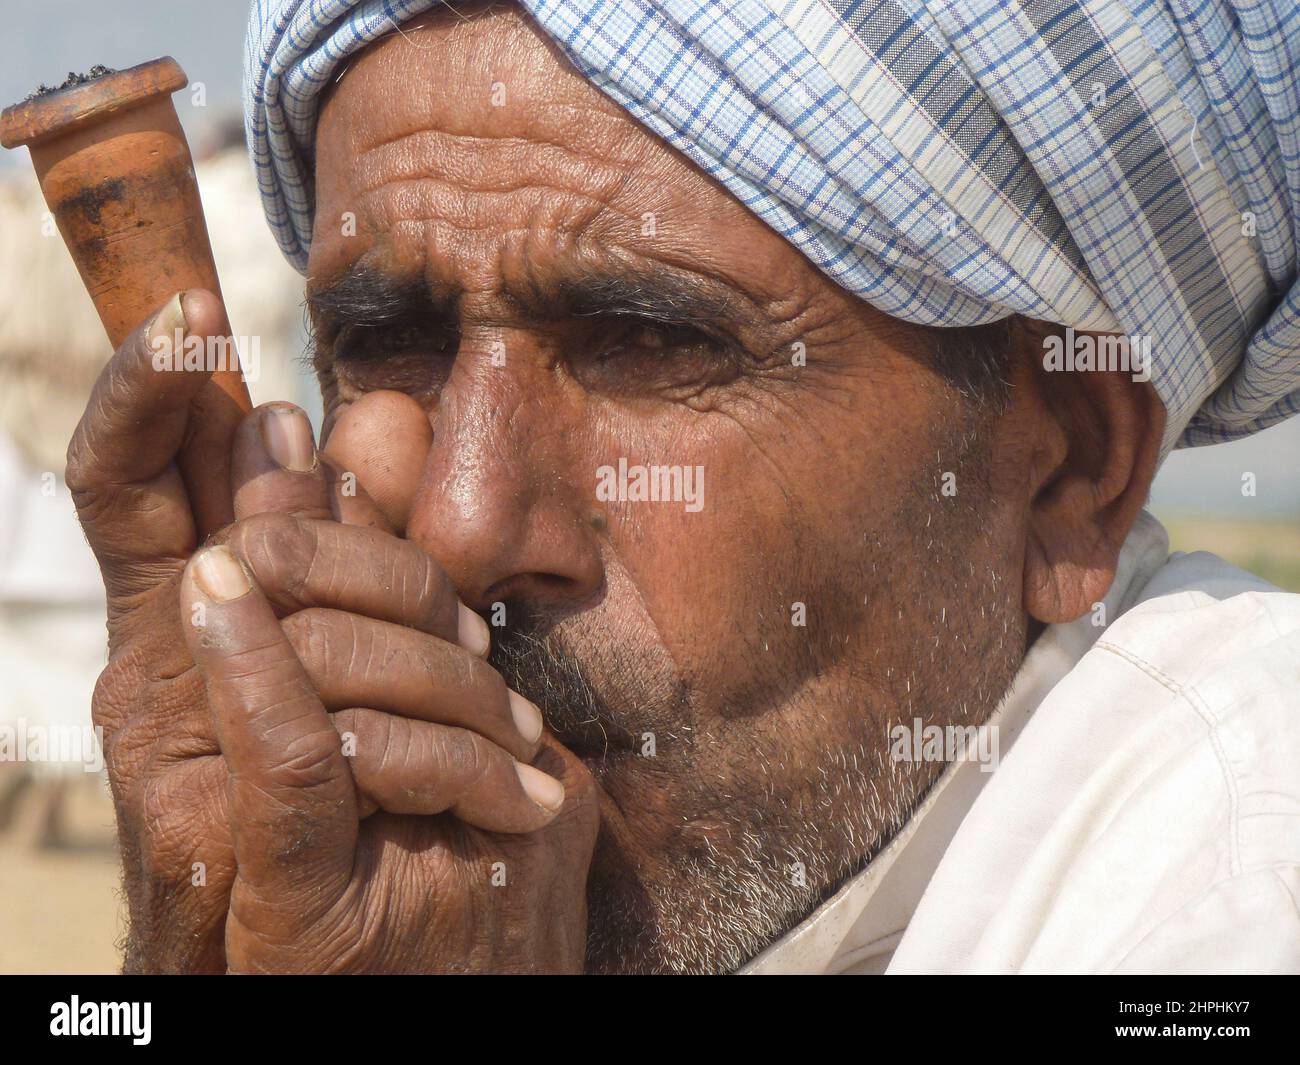 Hombre fumando hachís en tjilm, Rajasthan, India Foto de stock